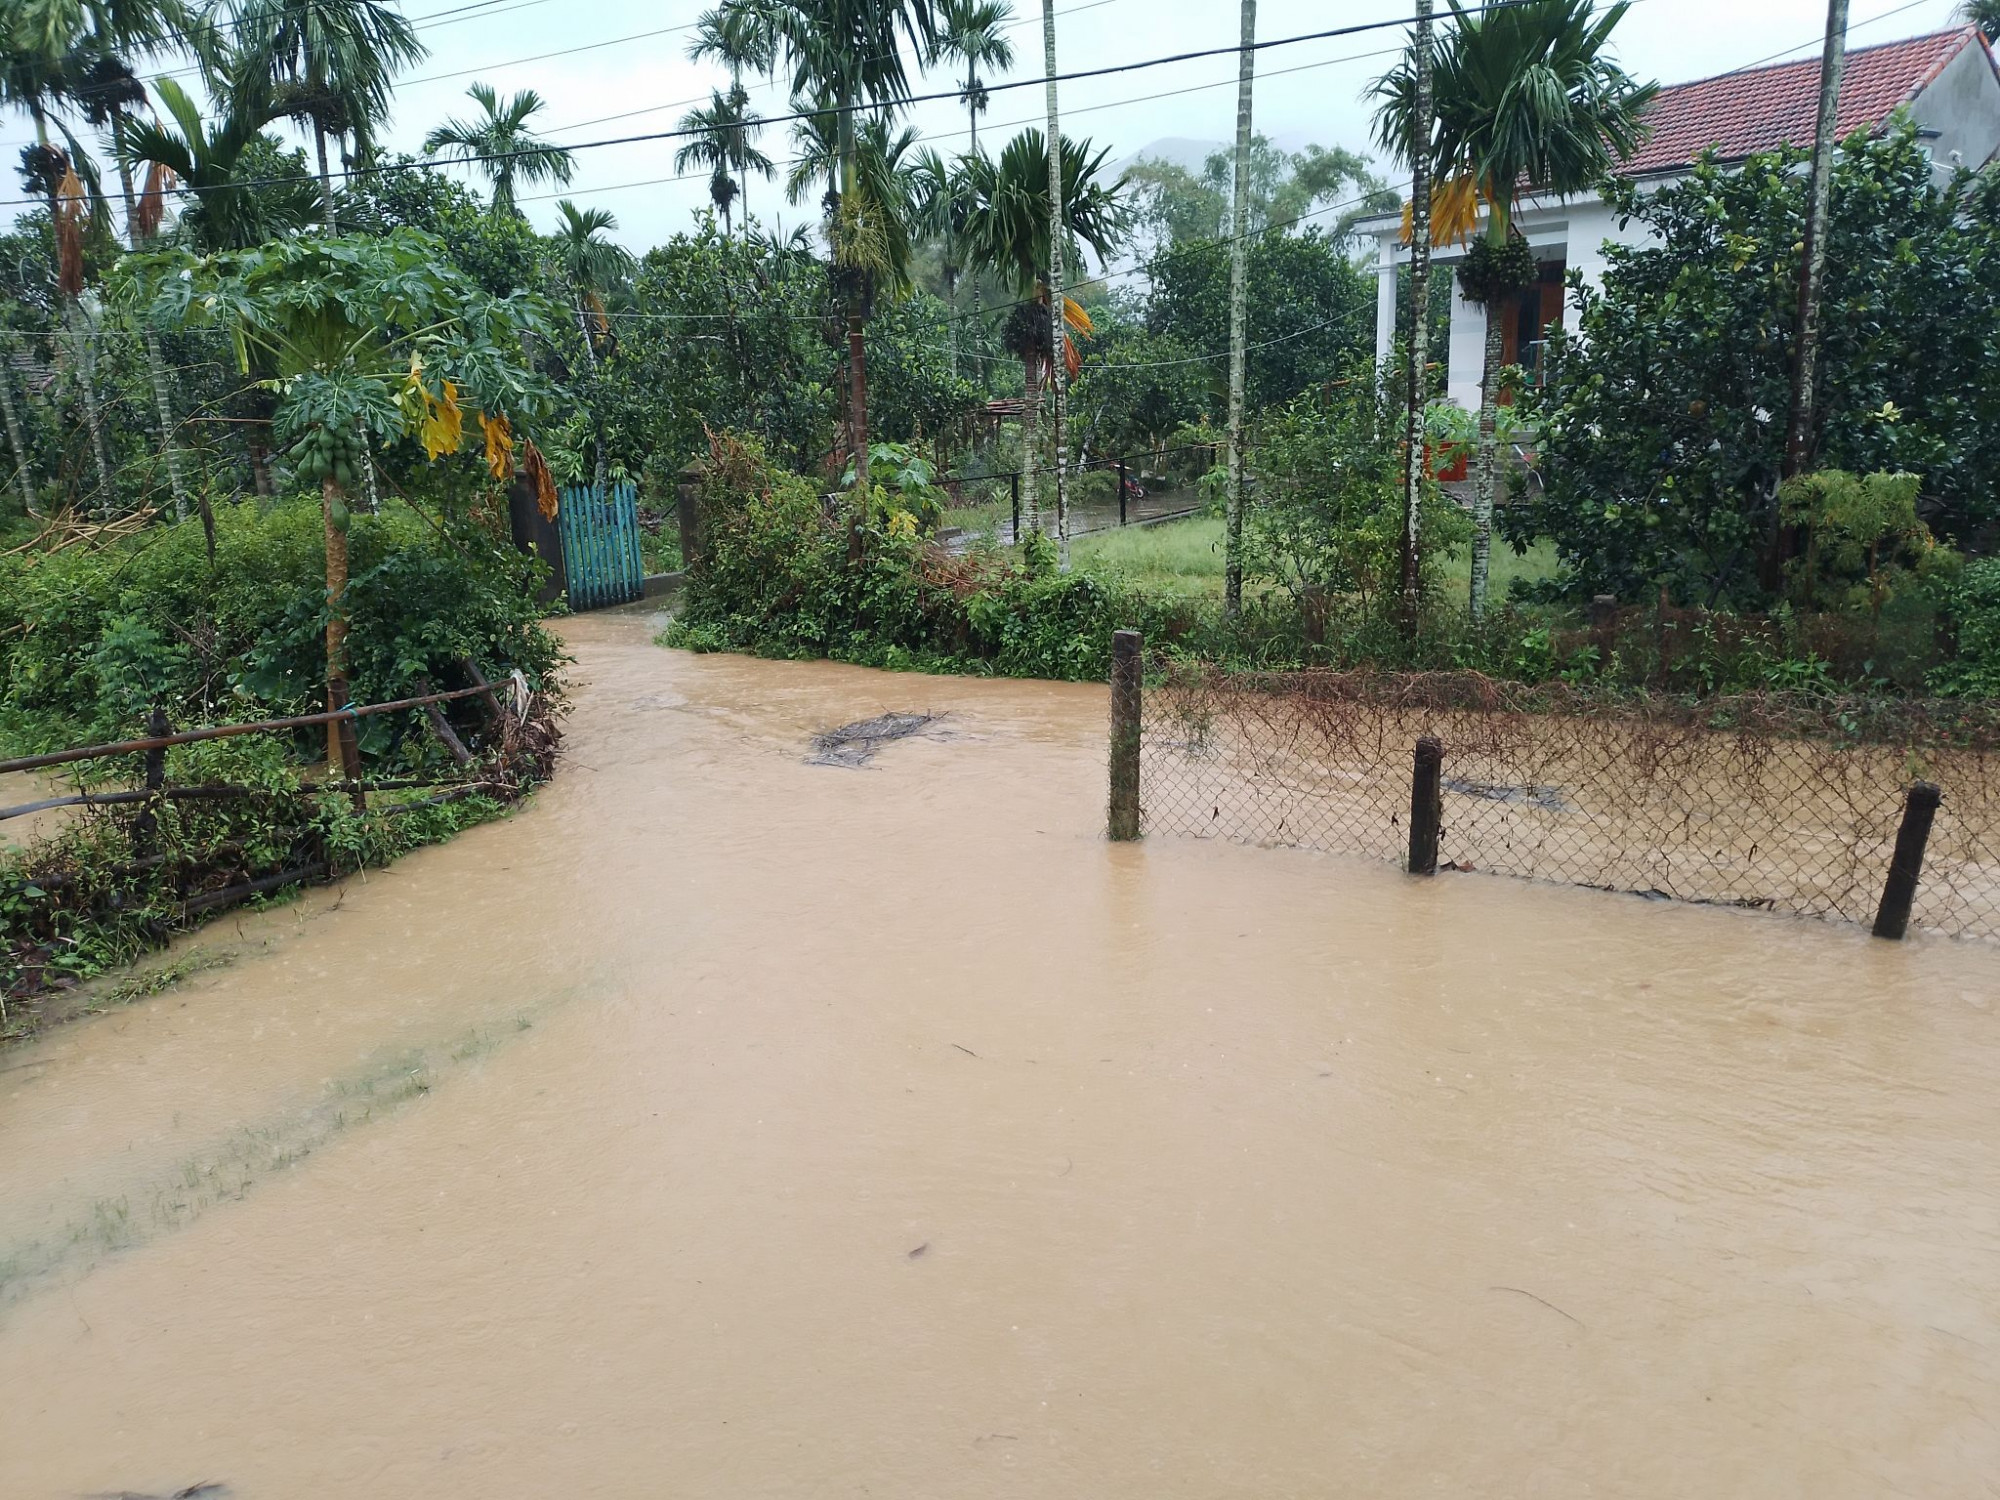 Mưa lớn khiến mực nước sông ở Quảng Nam lên rất nhanh. Nhiều nơi của huyện Đại Lộc đa chìm sâu trong nước lũ